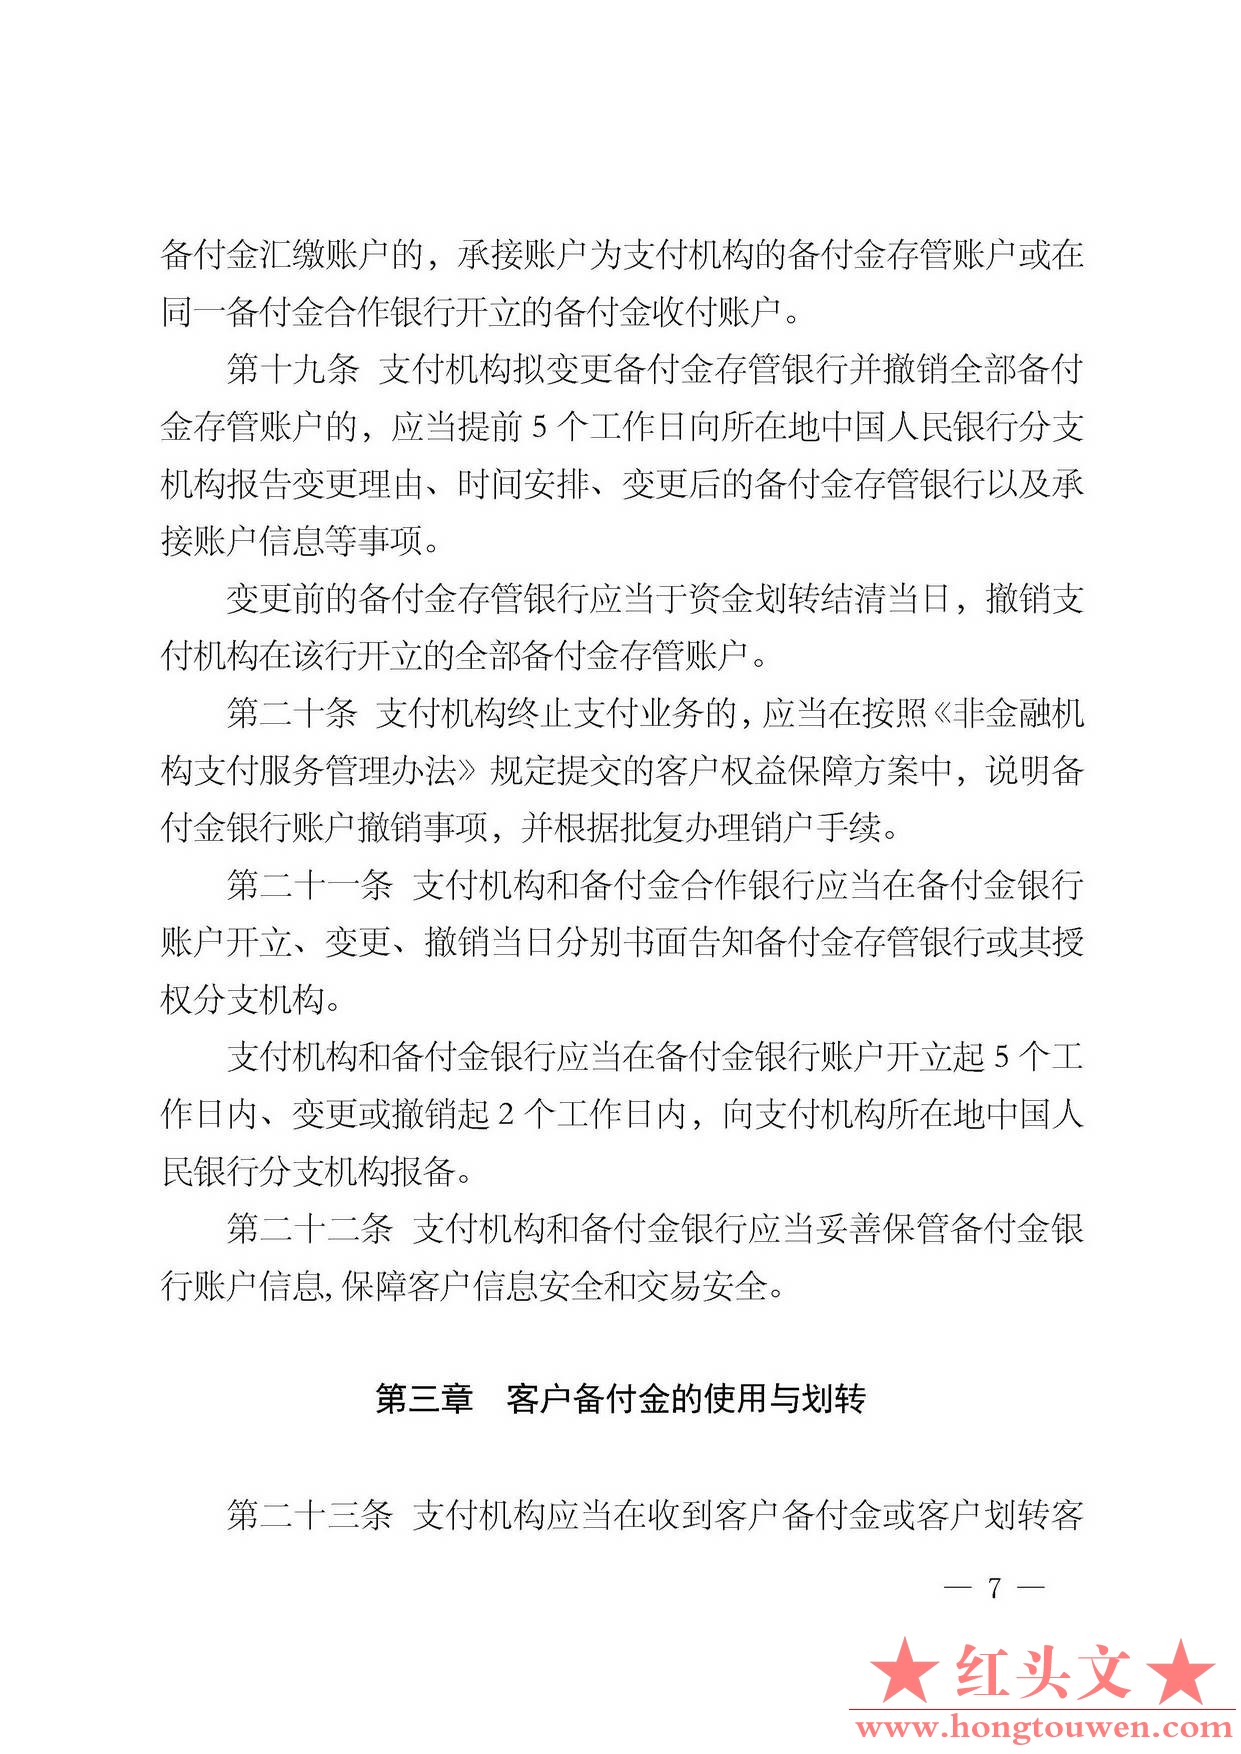 中国人民银行公告[2013]6号-《支付机构客户备付金存管办法》_页面_07.jpg.jpg